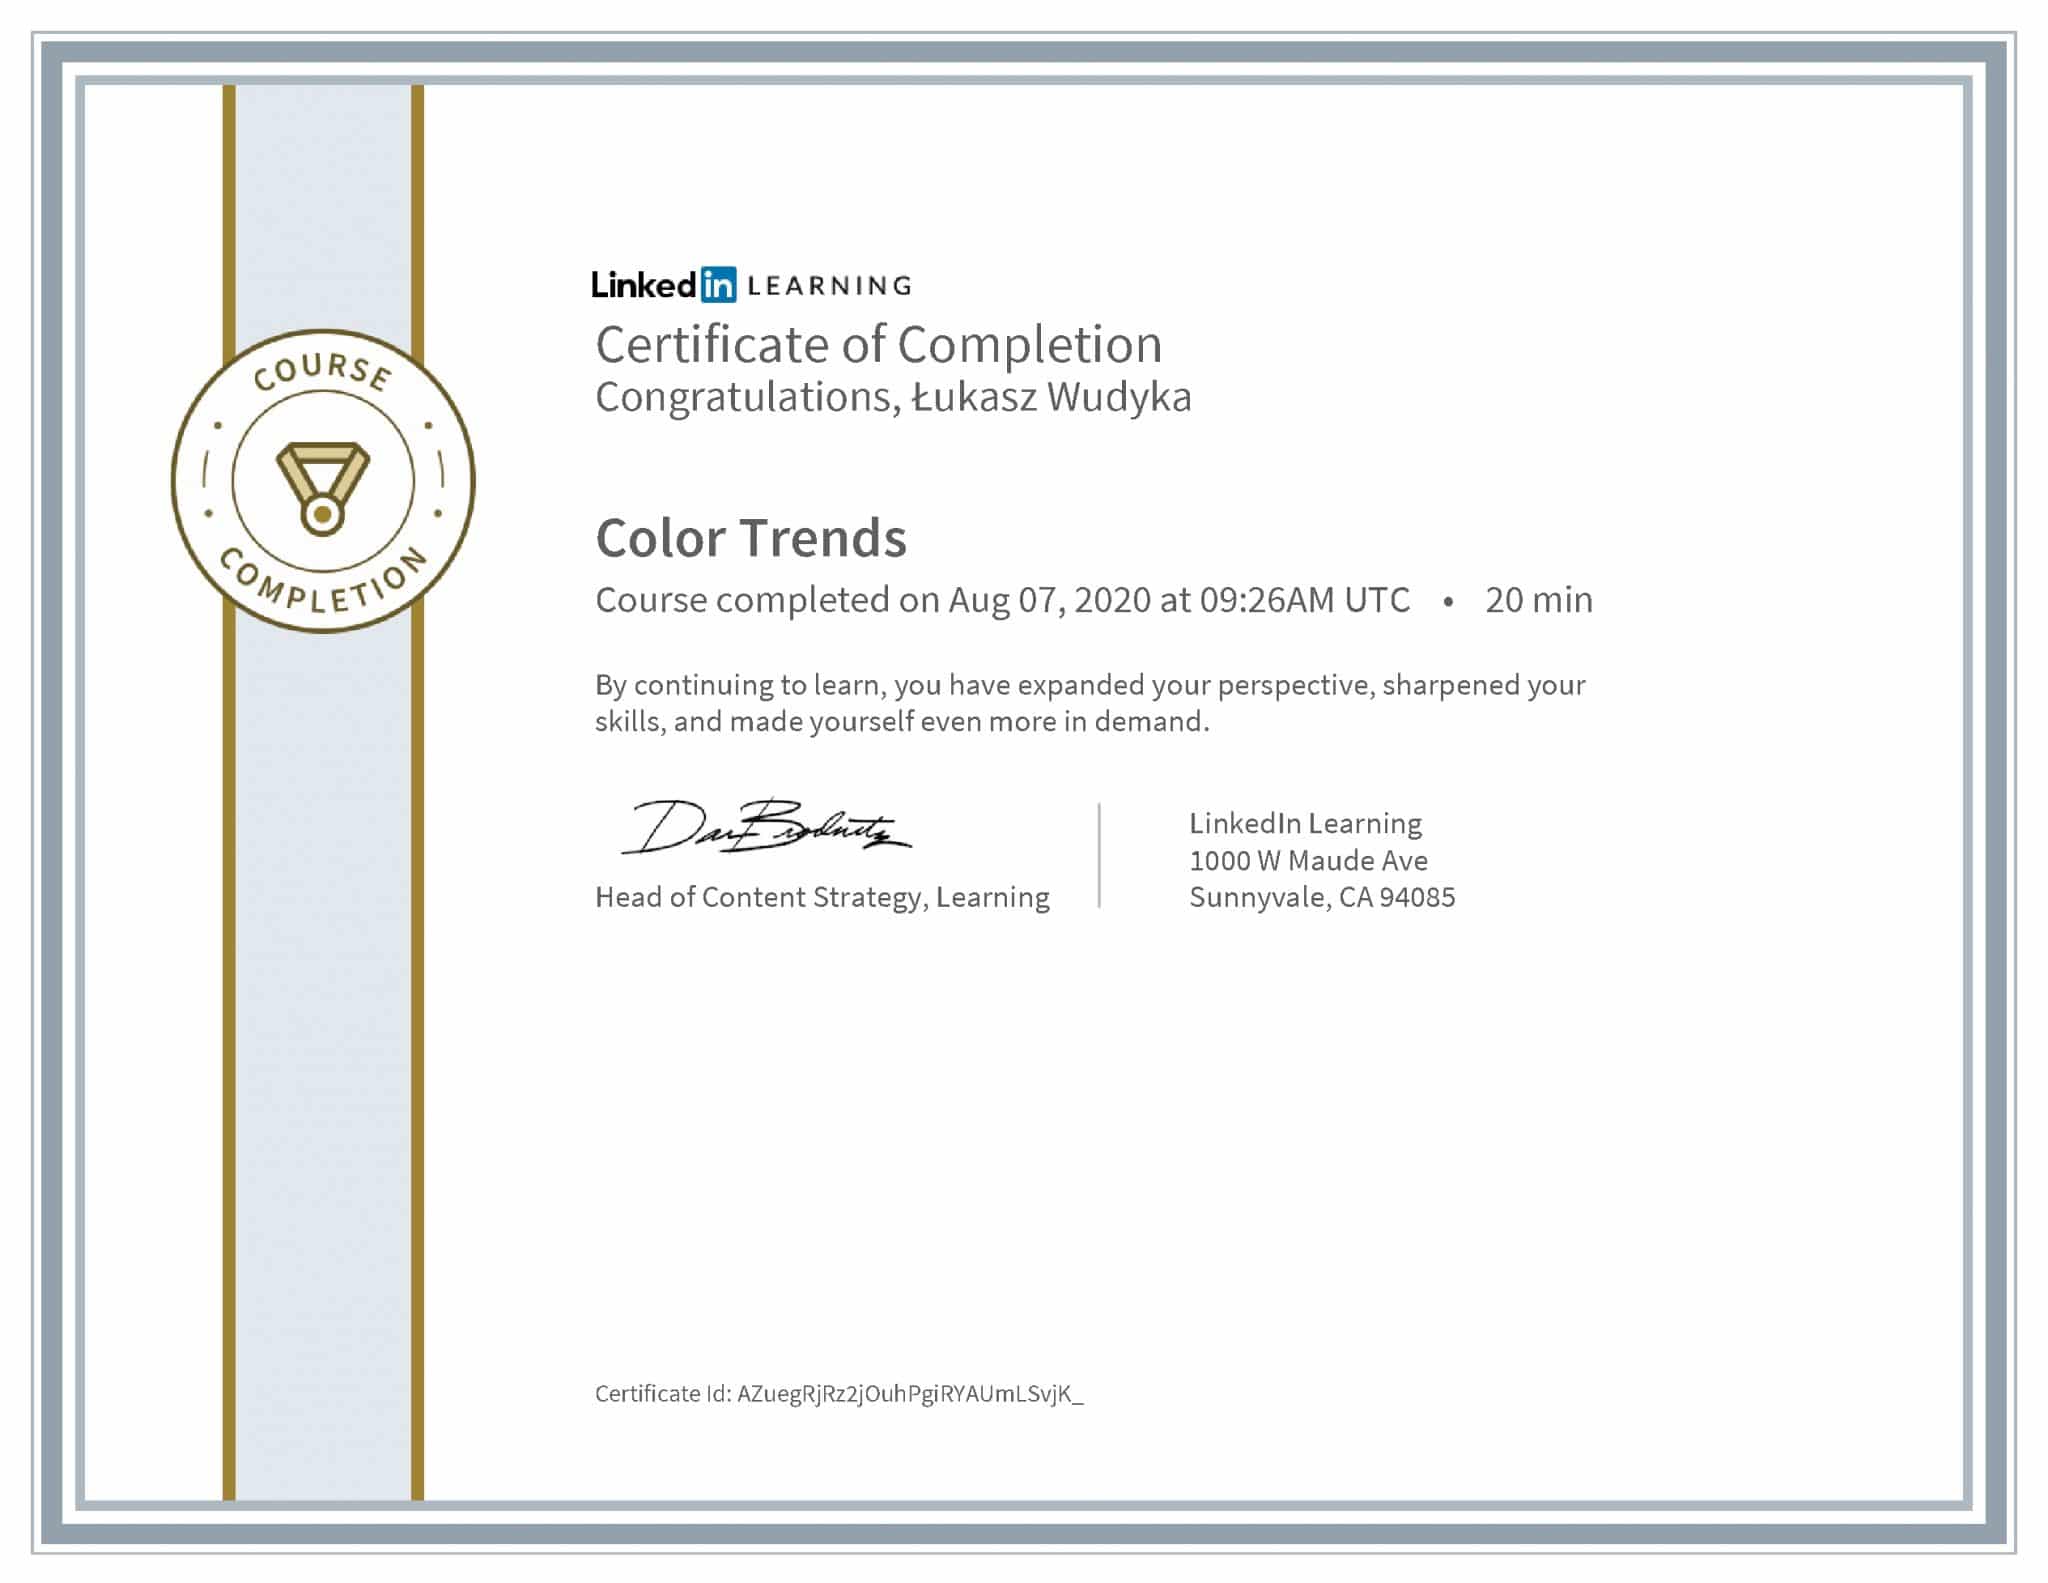 Łukasz Wudyka certyfikat LinkedIn Color Trends